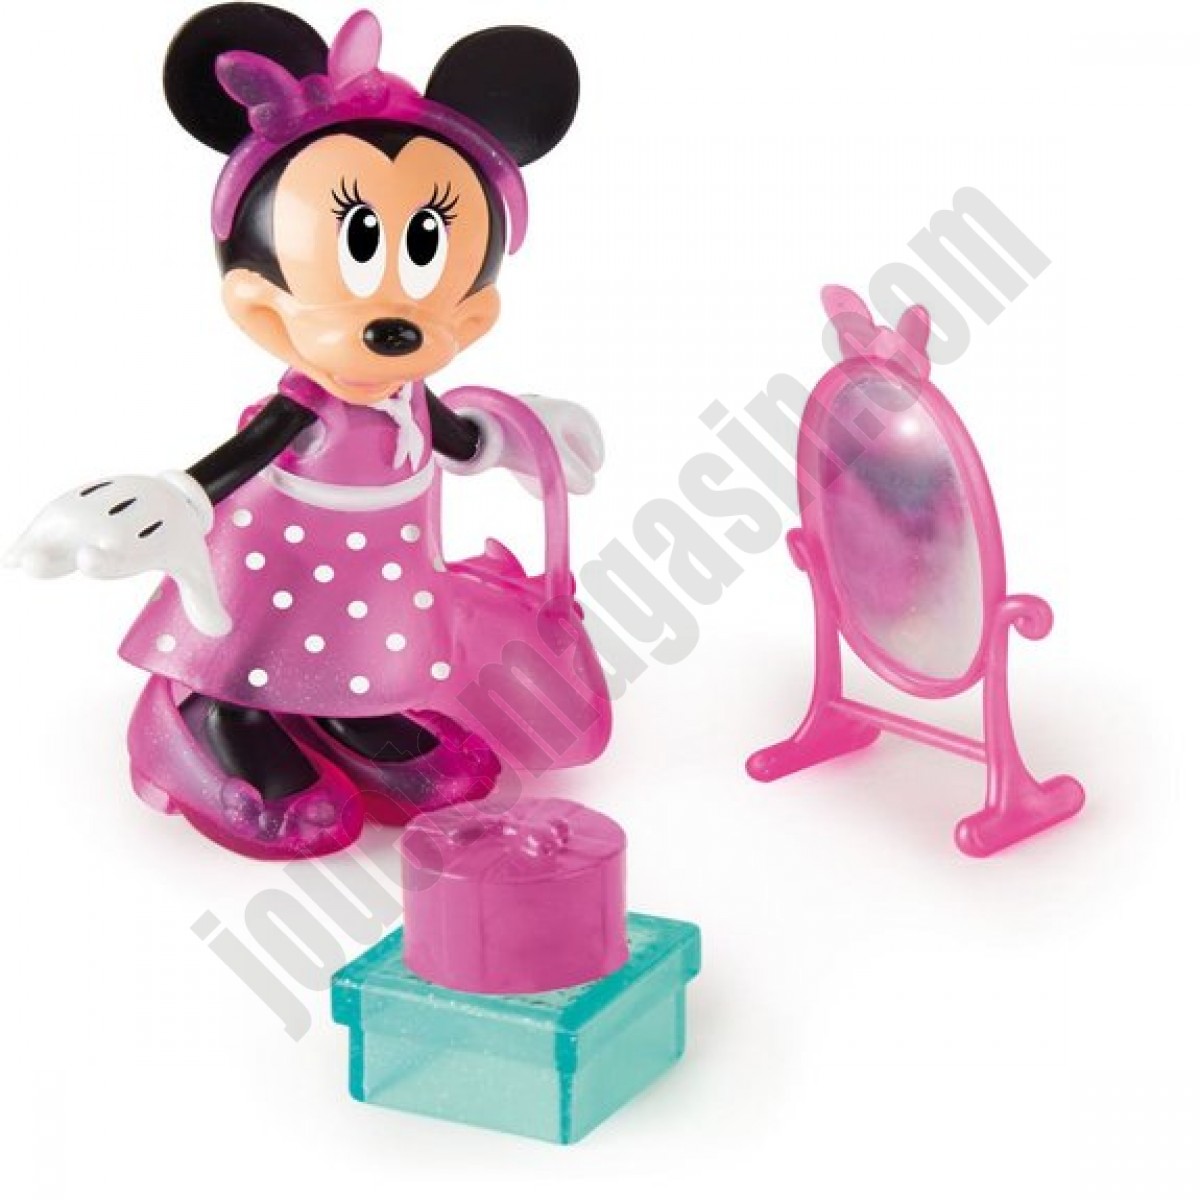 Figurine 15 cm Minnie fashionista shopping - Disney - déstockage - Figurine 15 cm Minnie fashionista shopping - Disney - déstockage